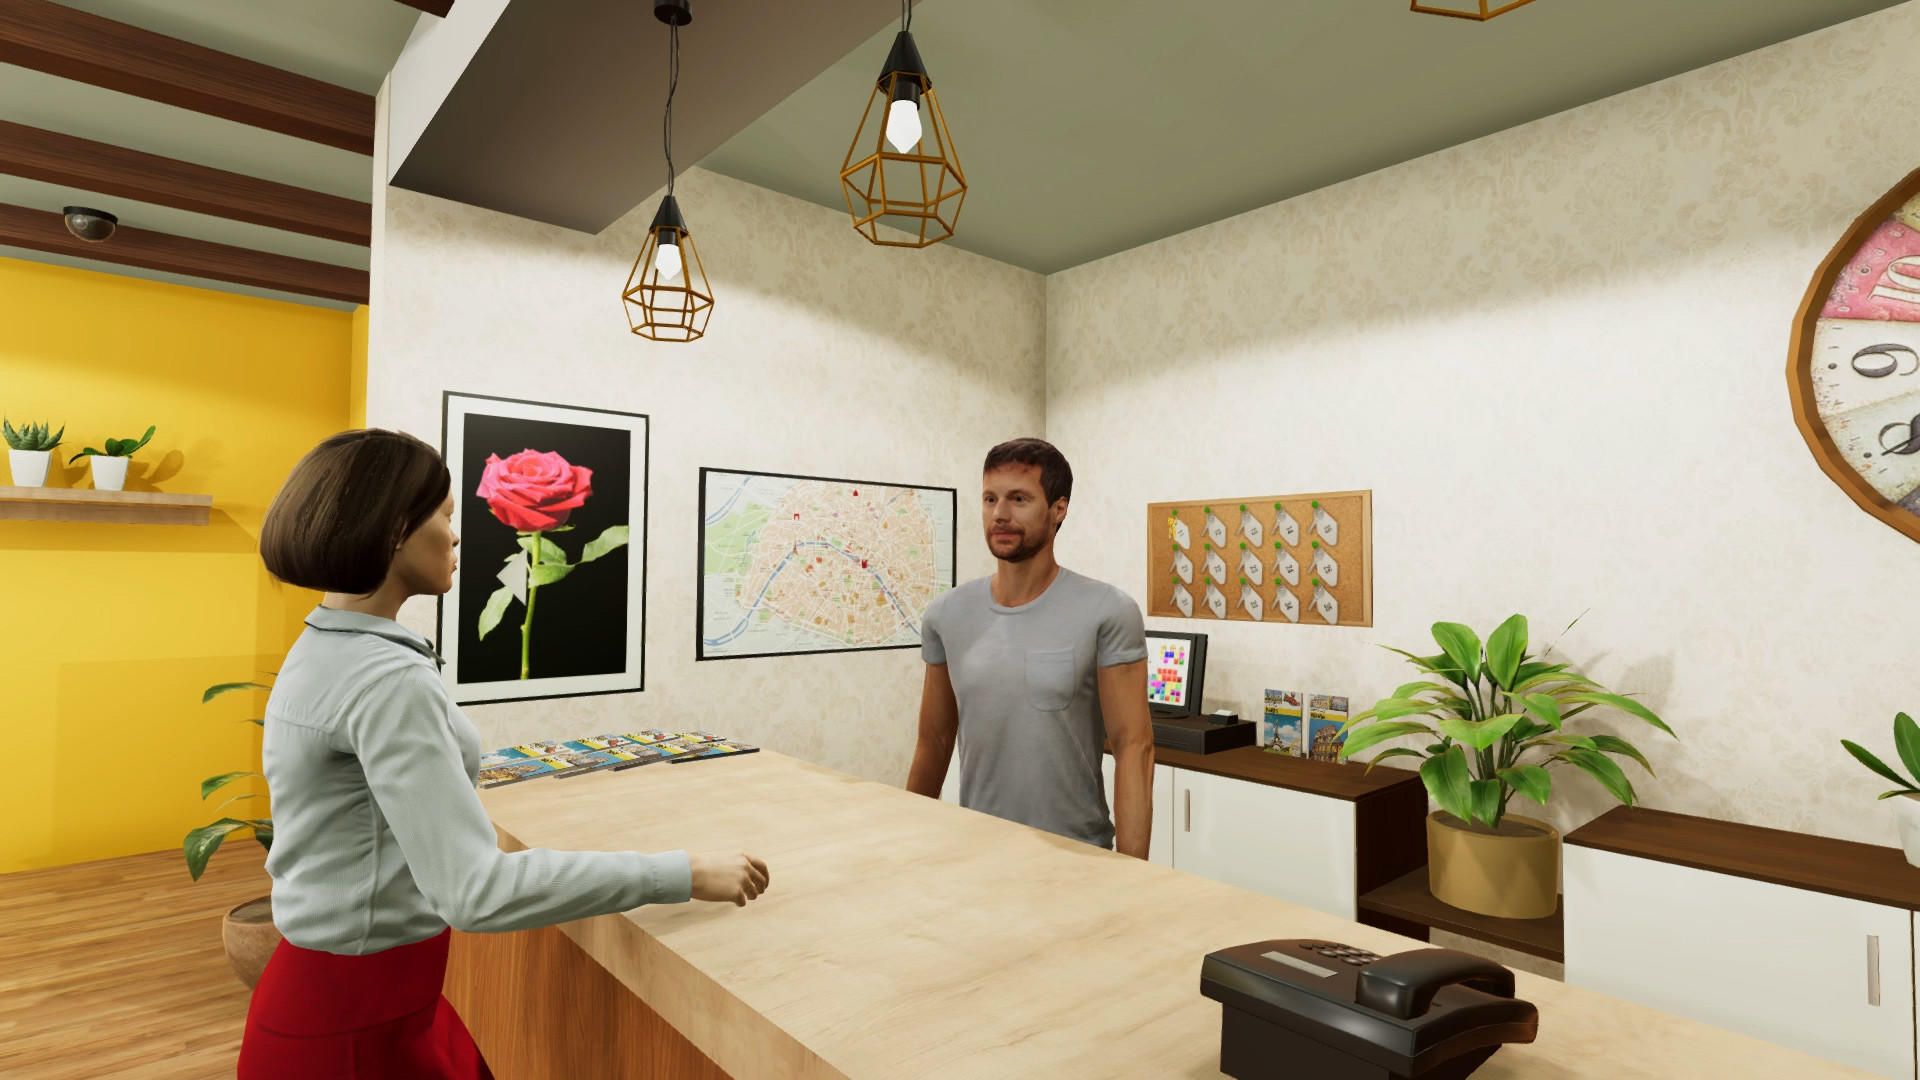 Screenshot of Hotel Simulator